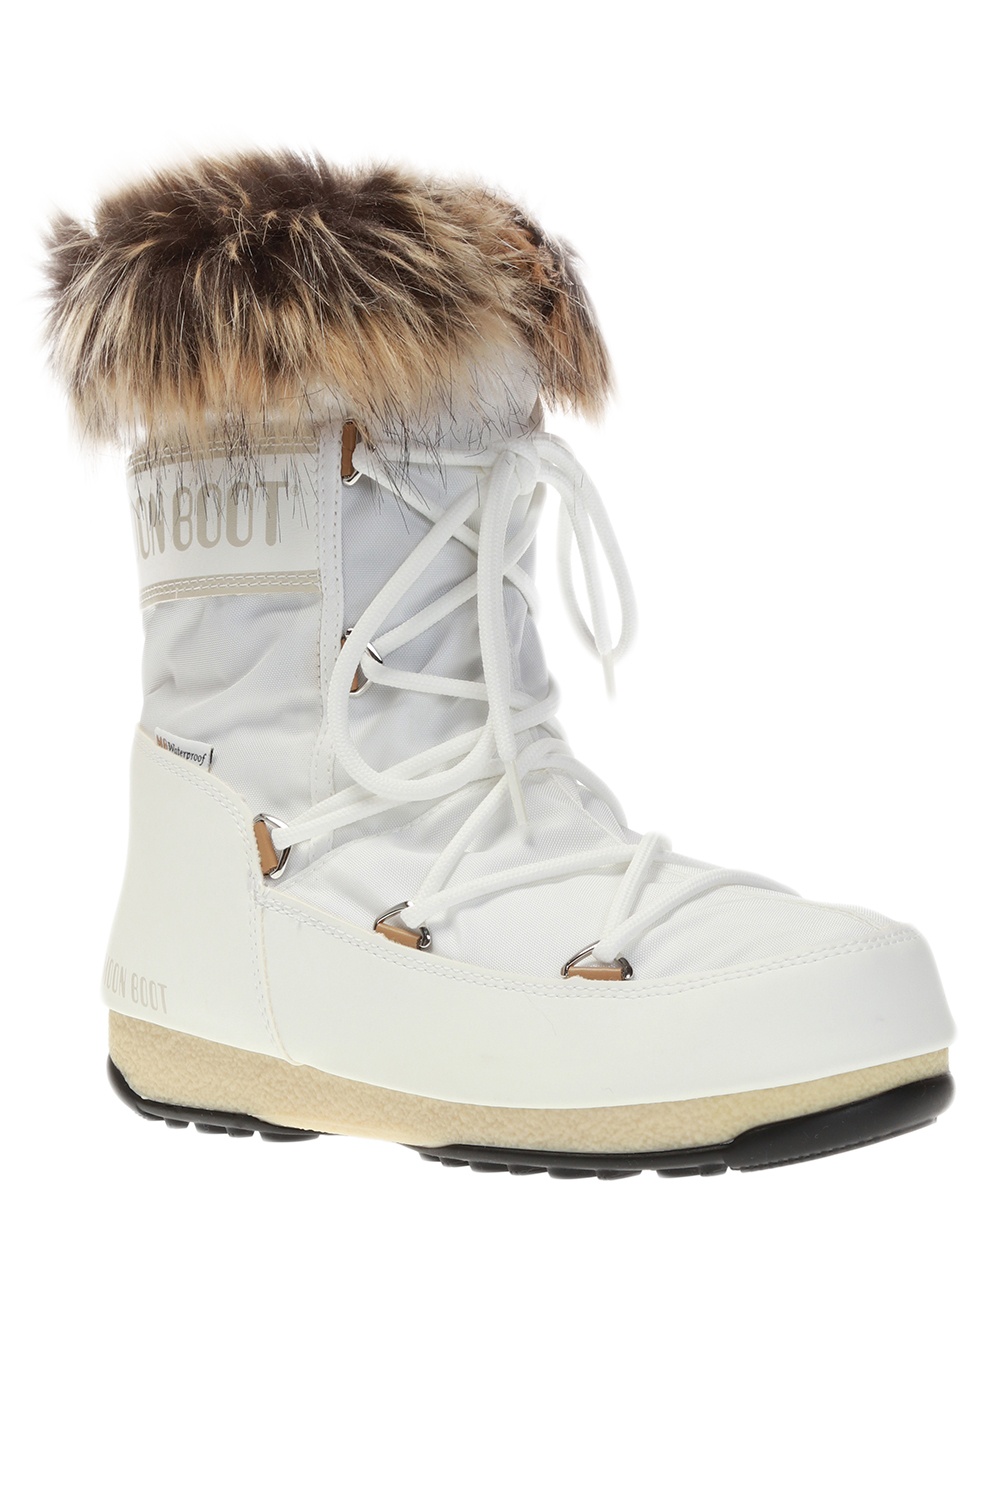 Geox s Shoes Cognac J26CVA - 'Monaco' snow boots Moon Boot - IetpShops GB